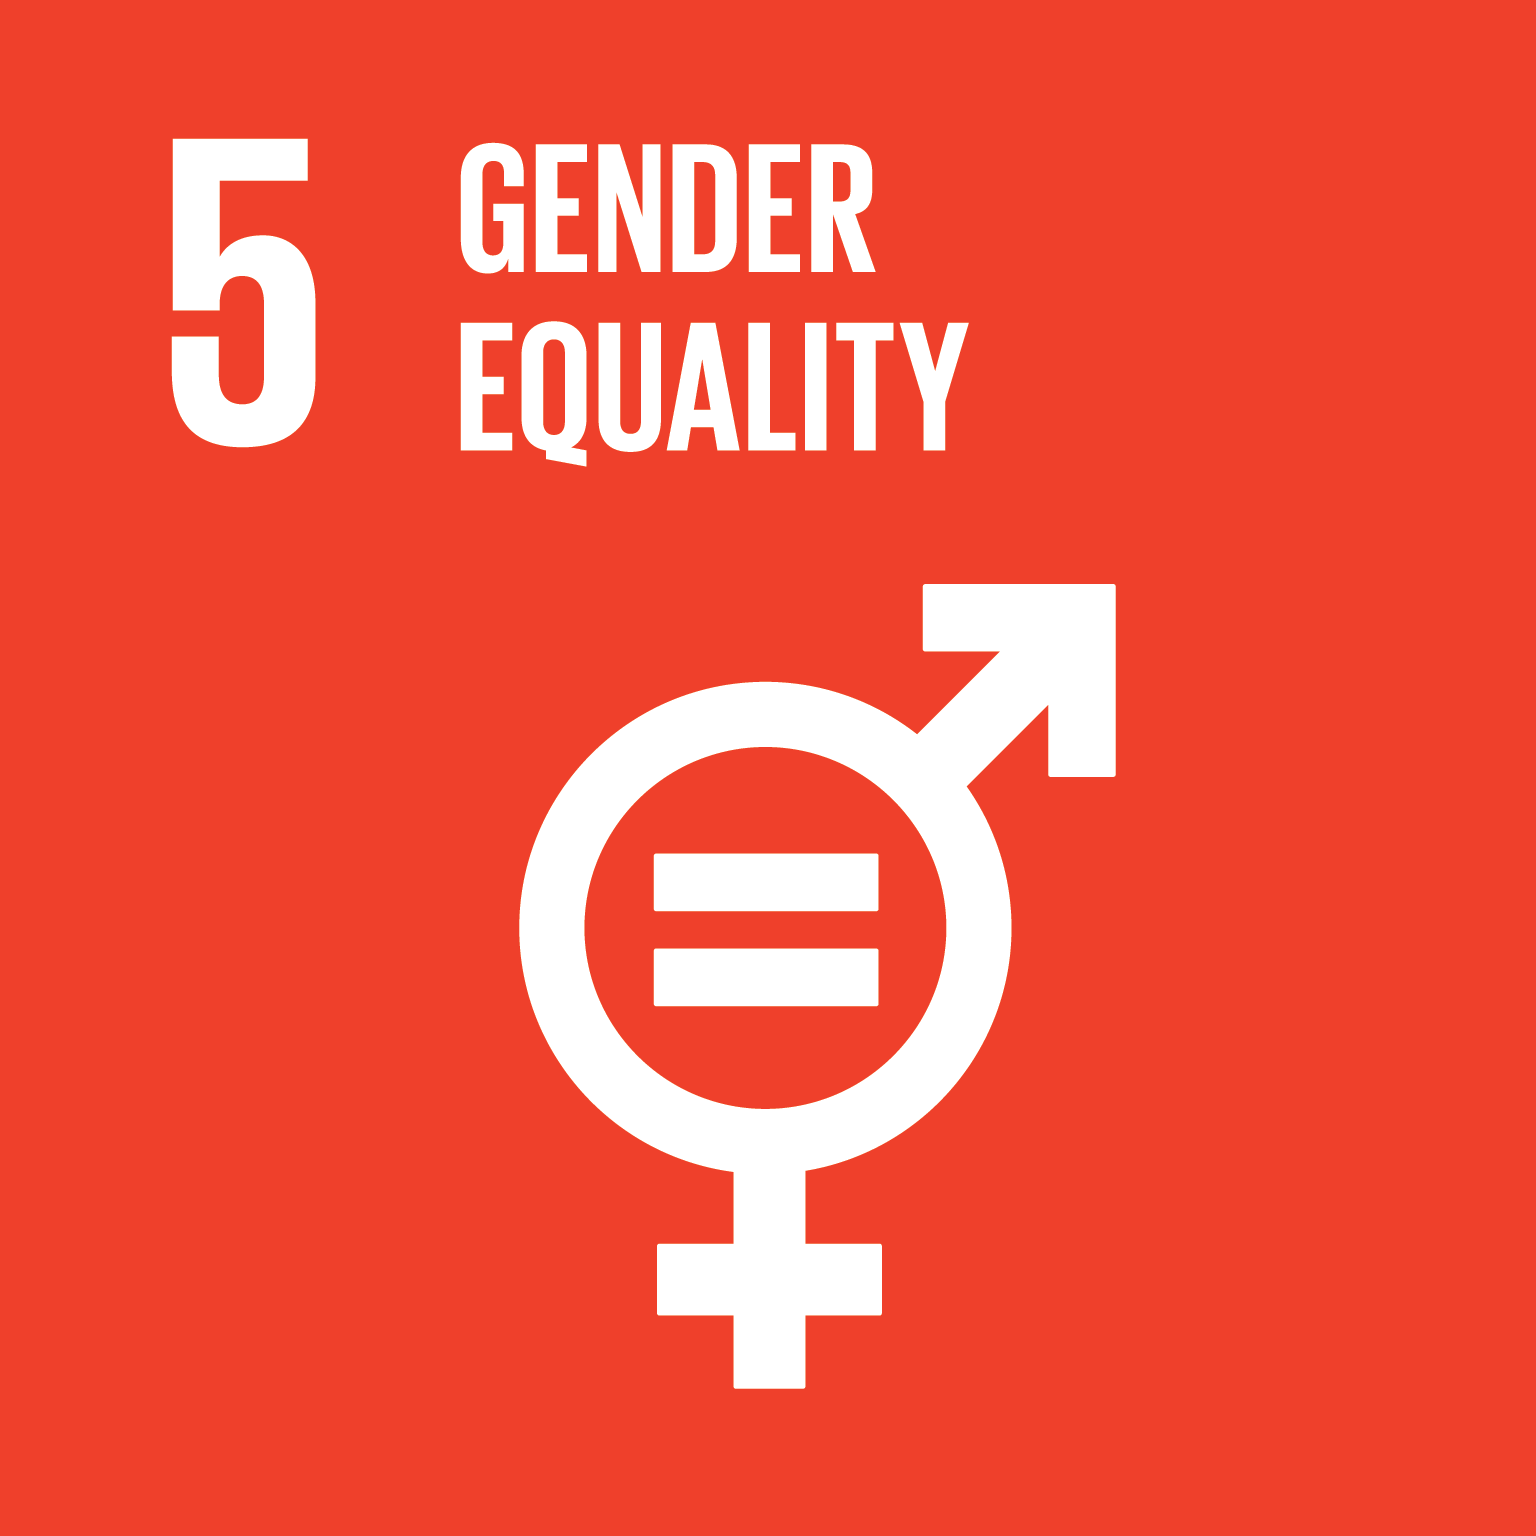 SDG - 5: Gender equality